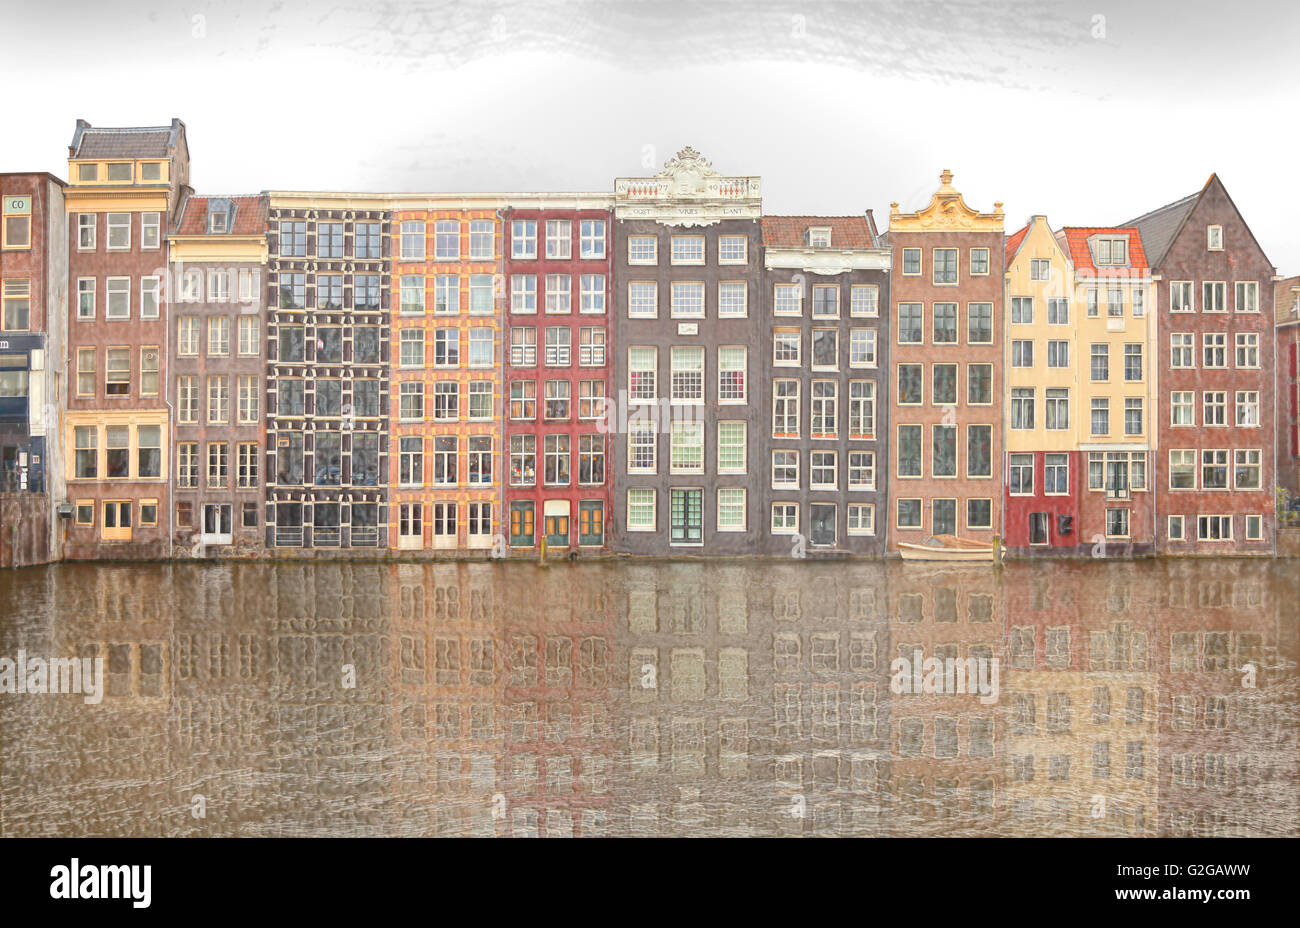 Arquitectura de Amsterdam, vista desde el Damrak, mirando al Este, el canal o el baile grachtenhuizen, filtro de derivación de la imagen Foto de stock